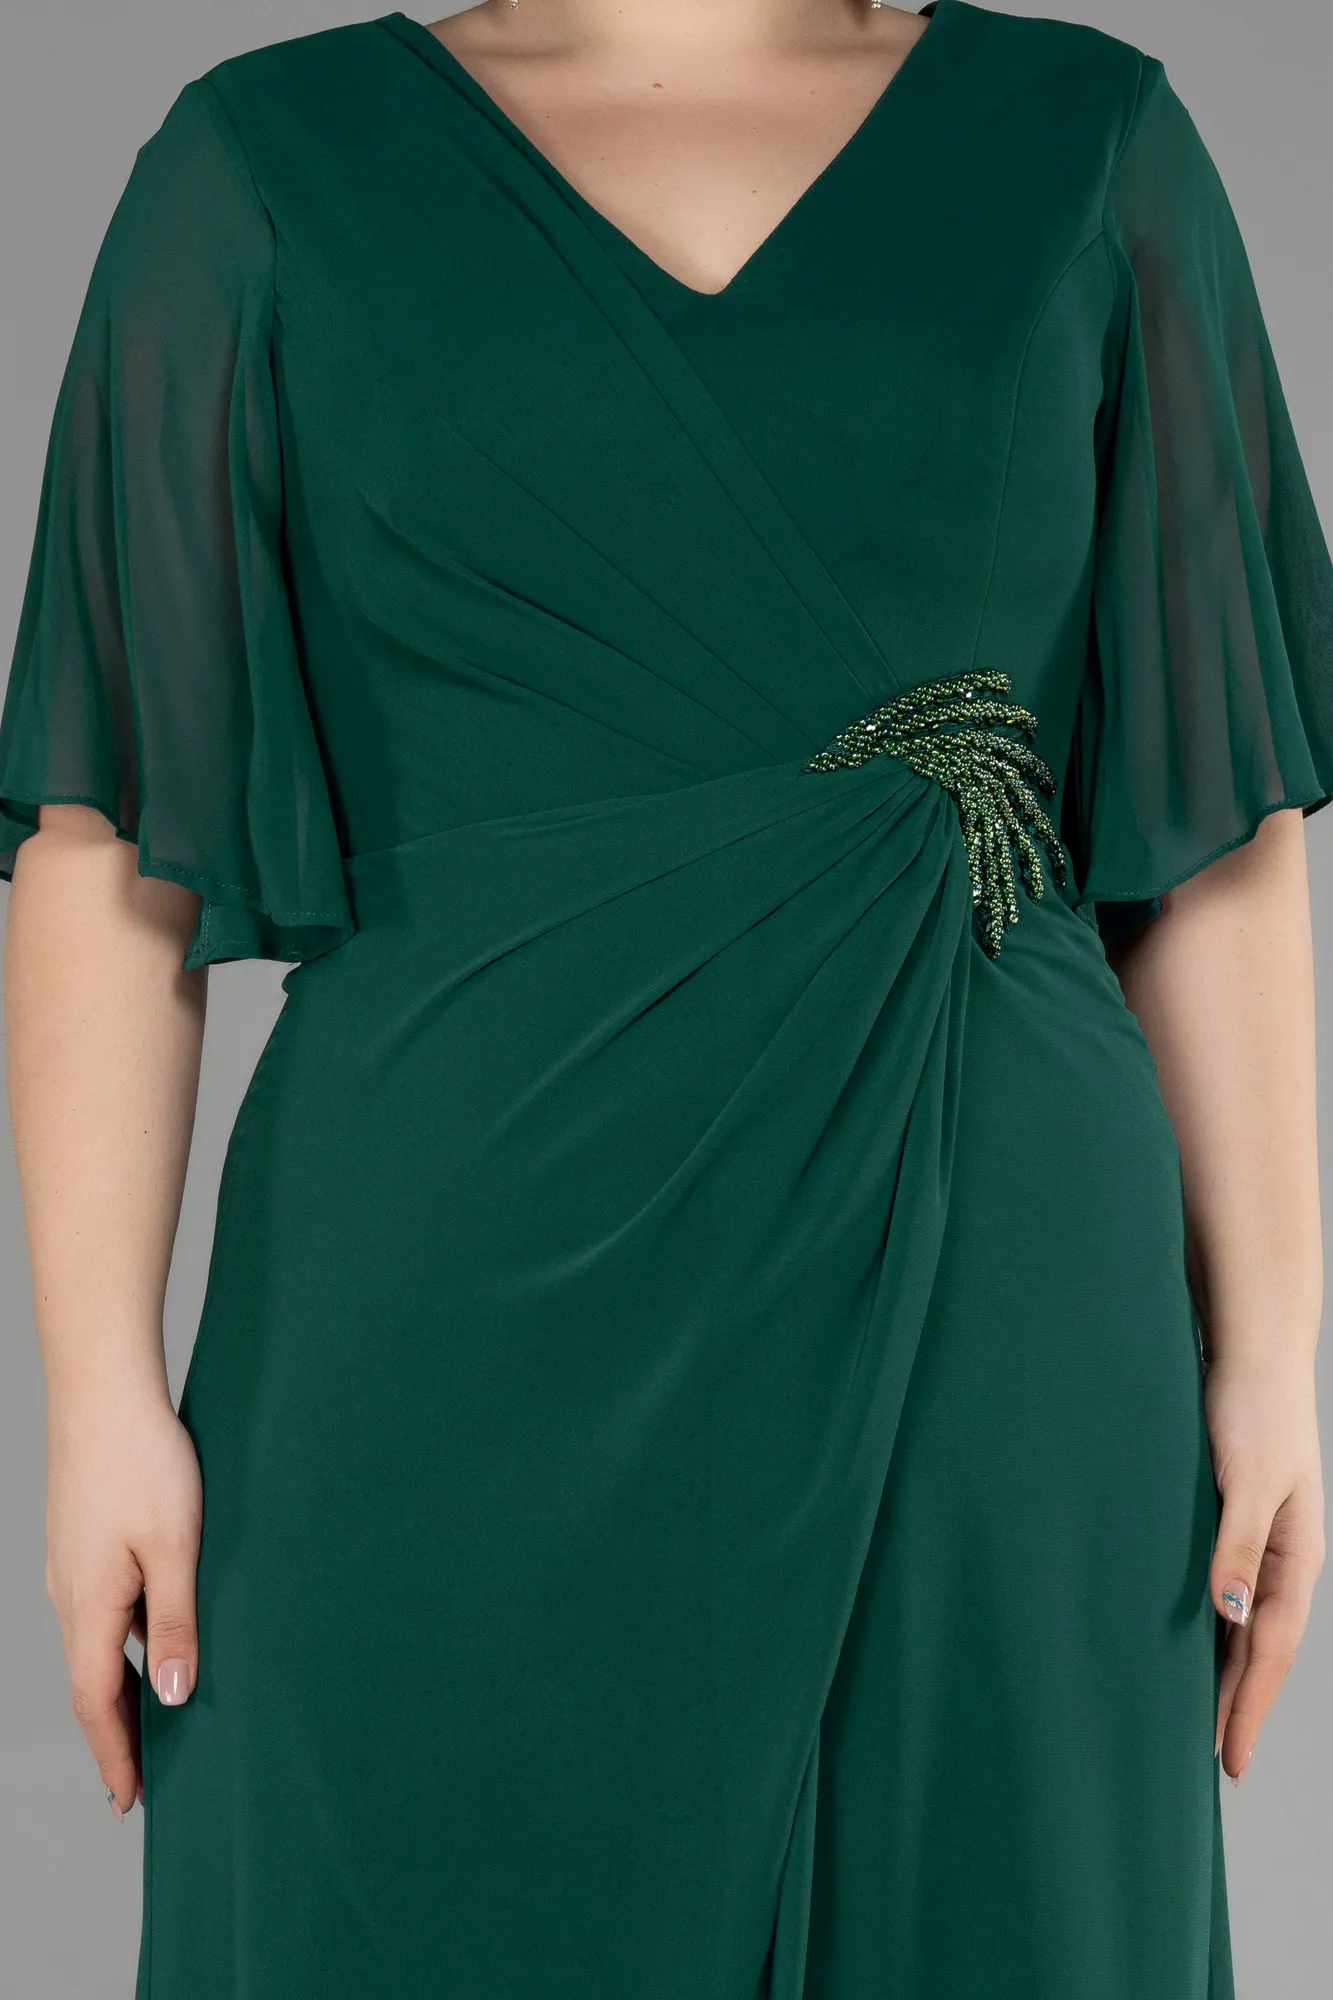 Emerald Green-Long Chiffon Plus Size Evening Gown ABU3592